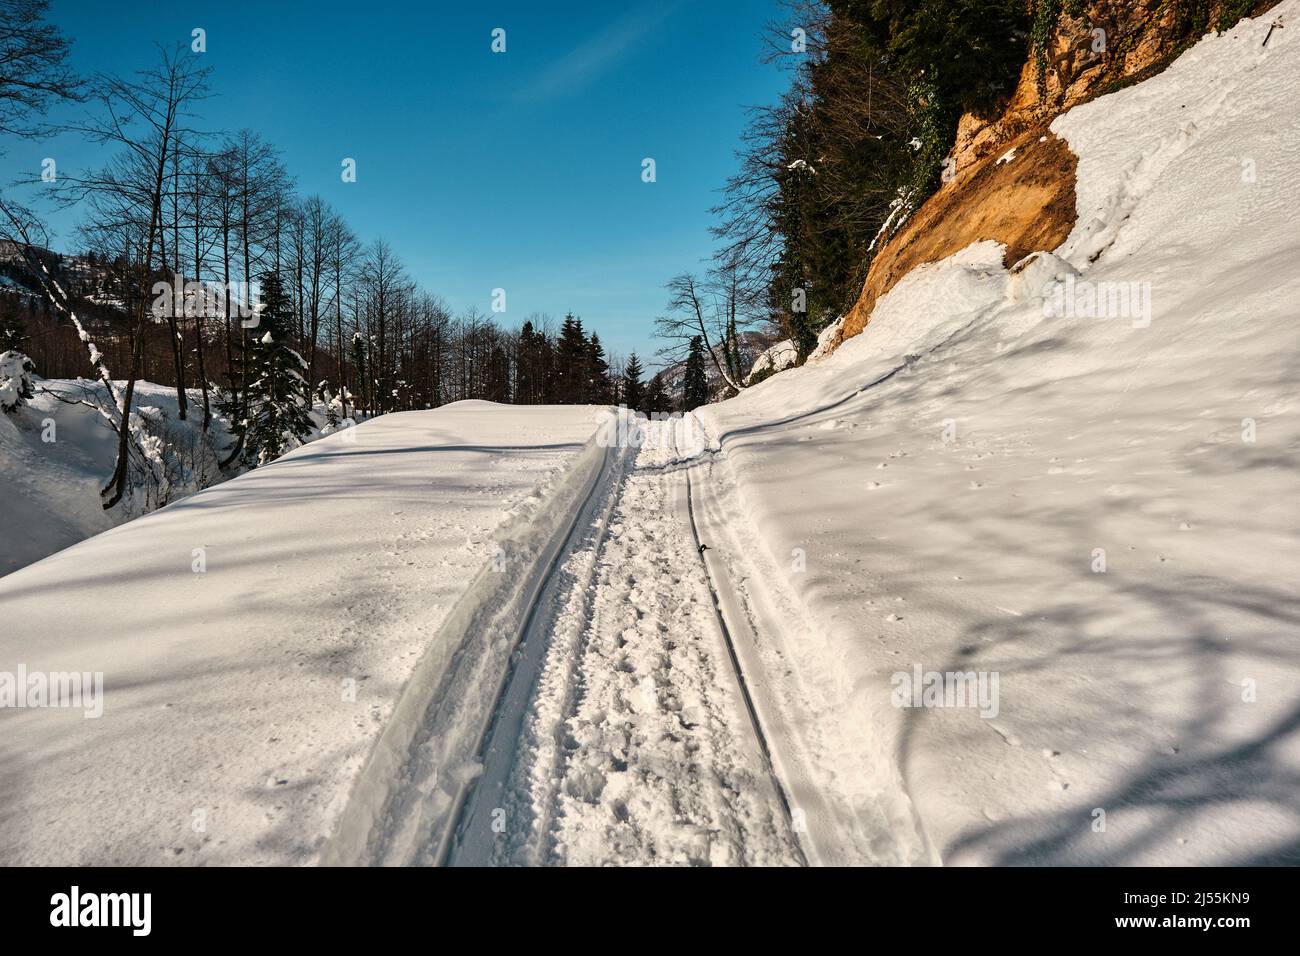 Idea di concetto di inverno. Neve e strada ghiacciata in cima alla montagna. Foto Stock